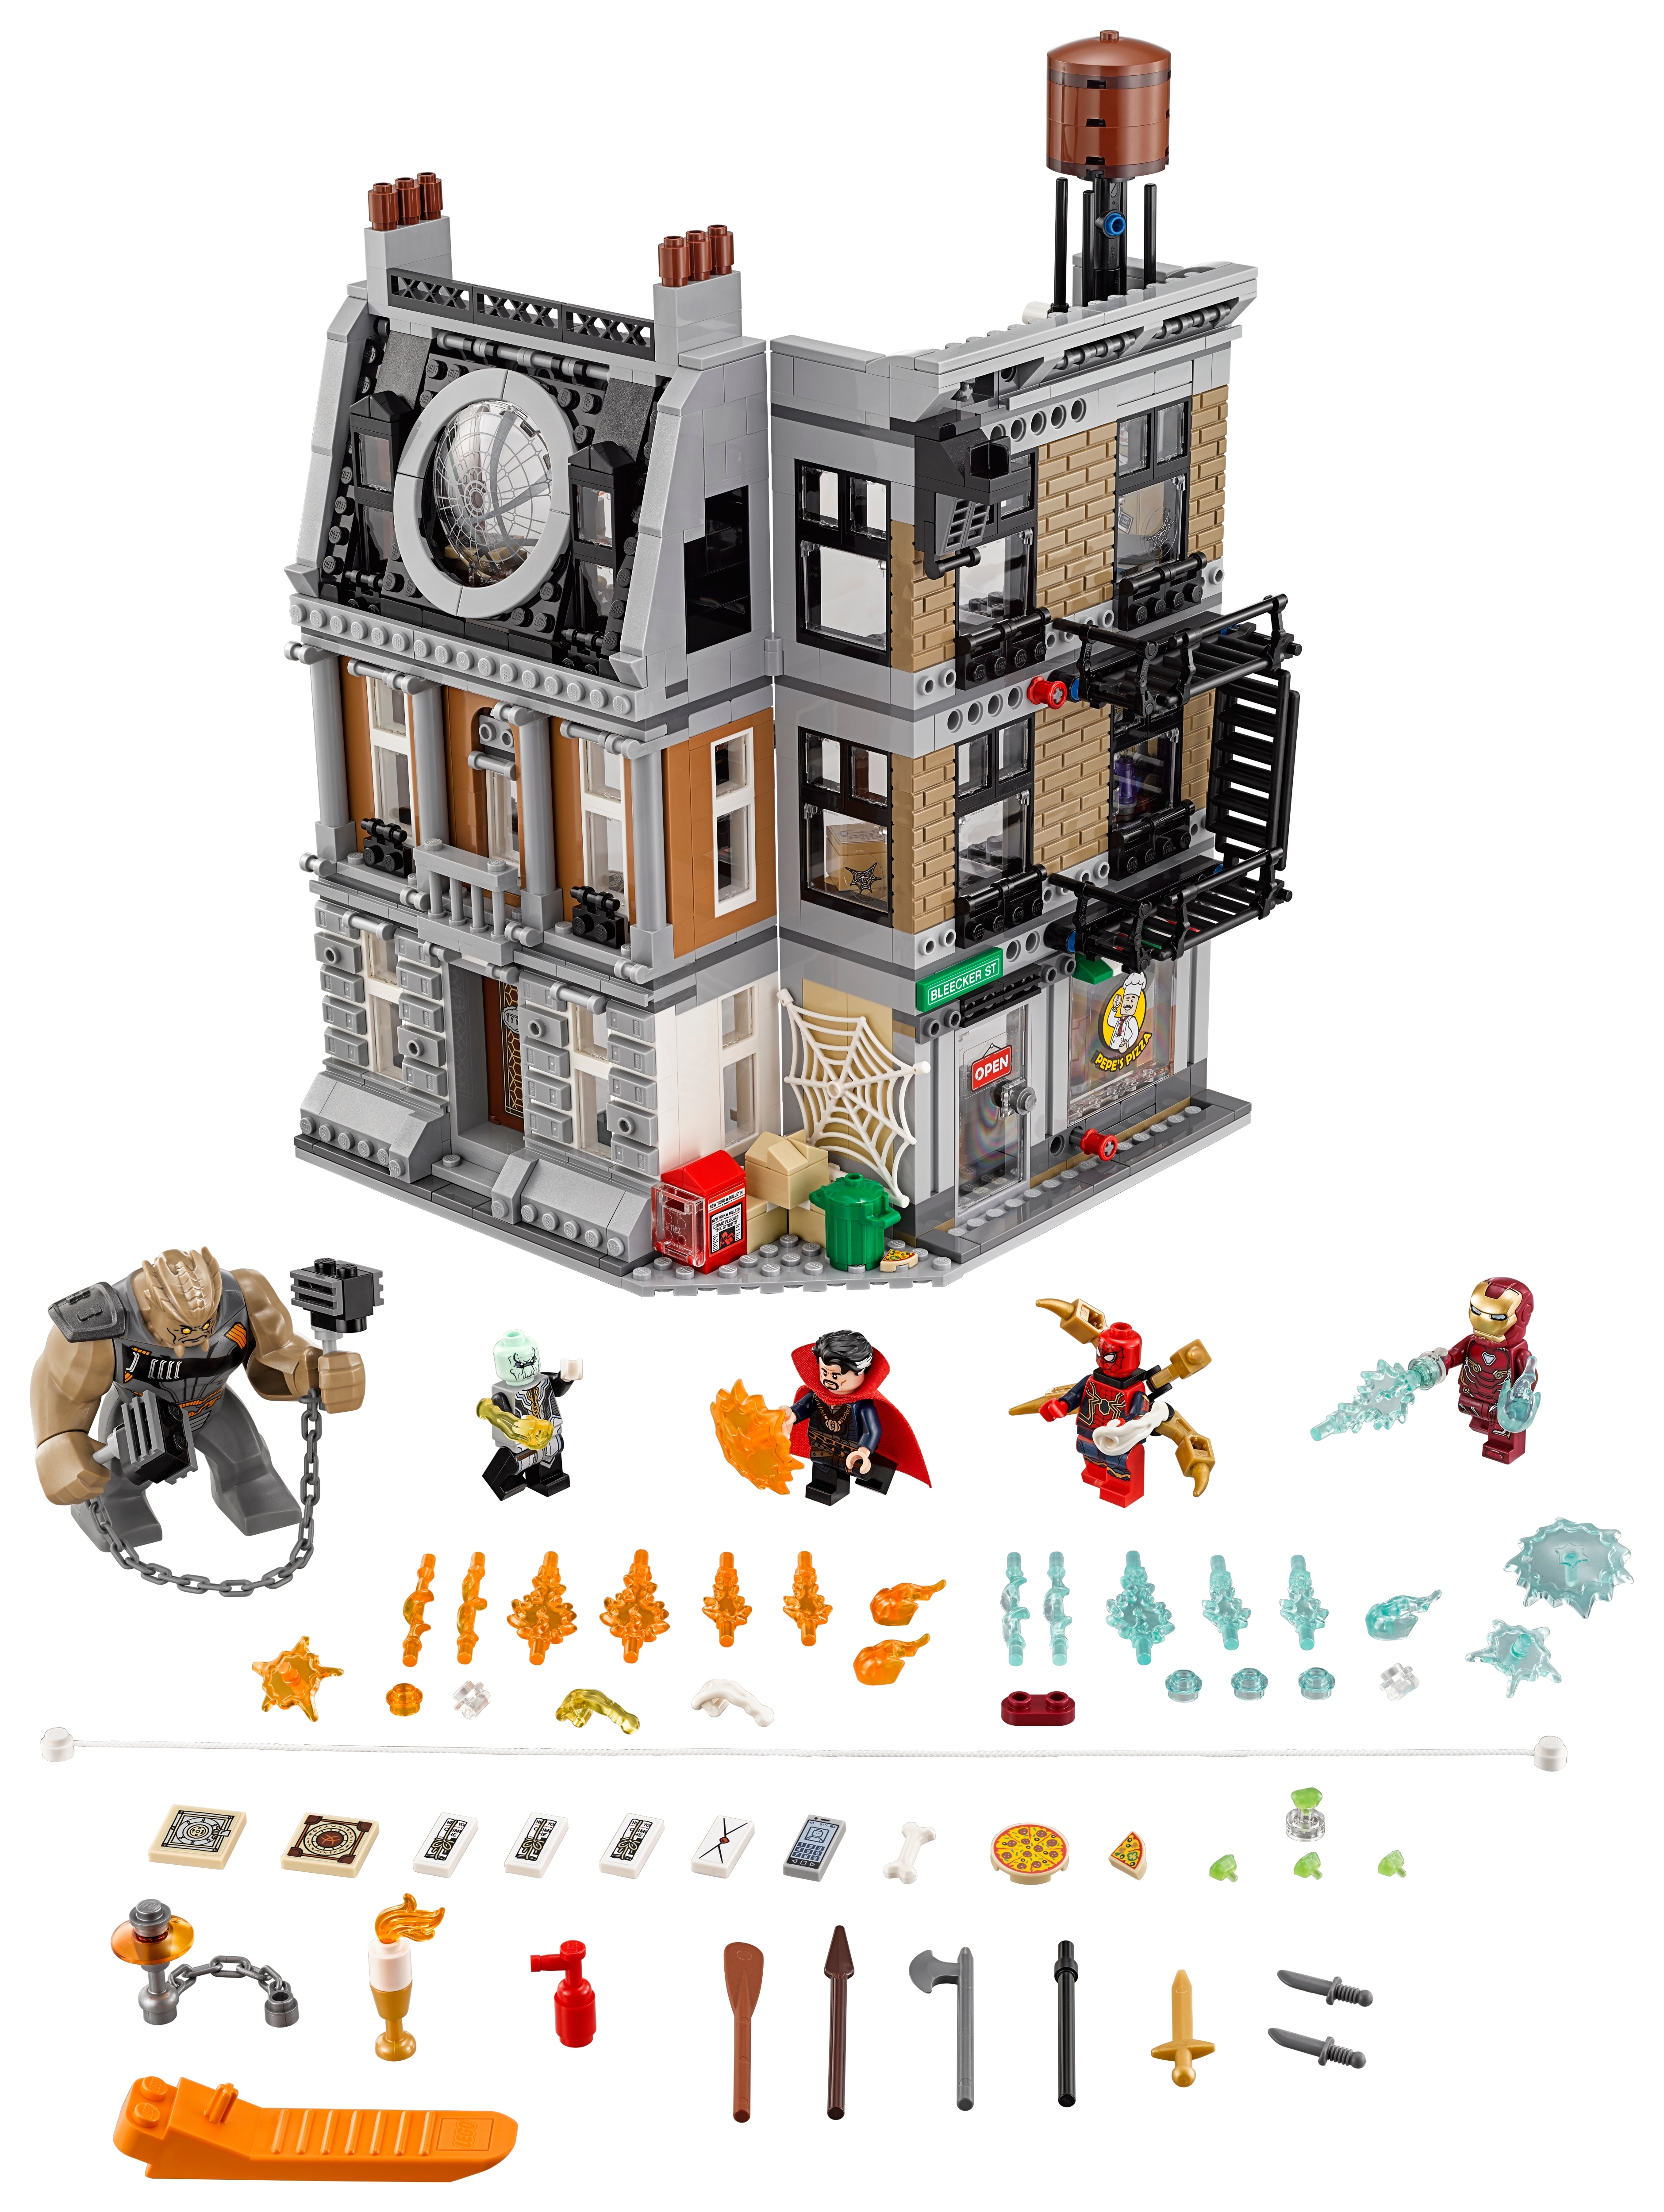 dr strange house lego set